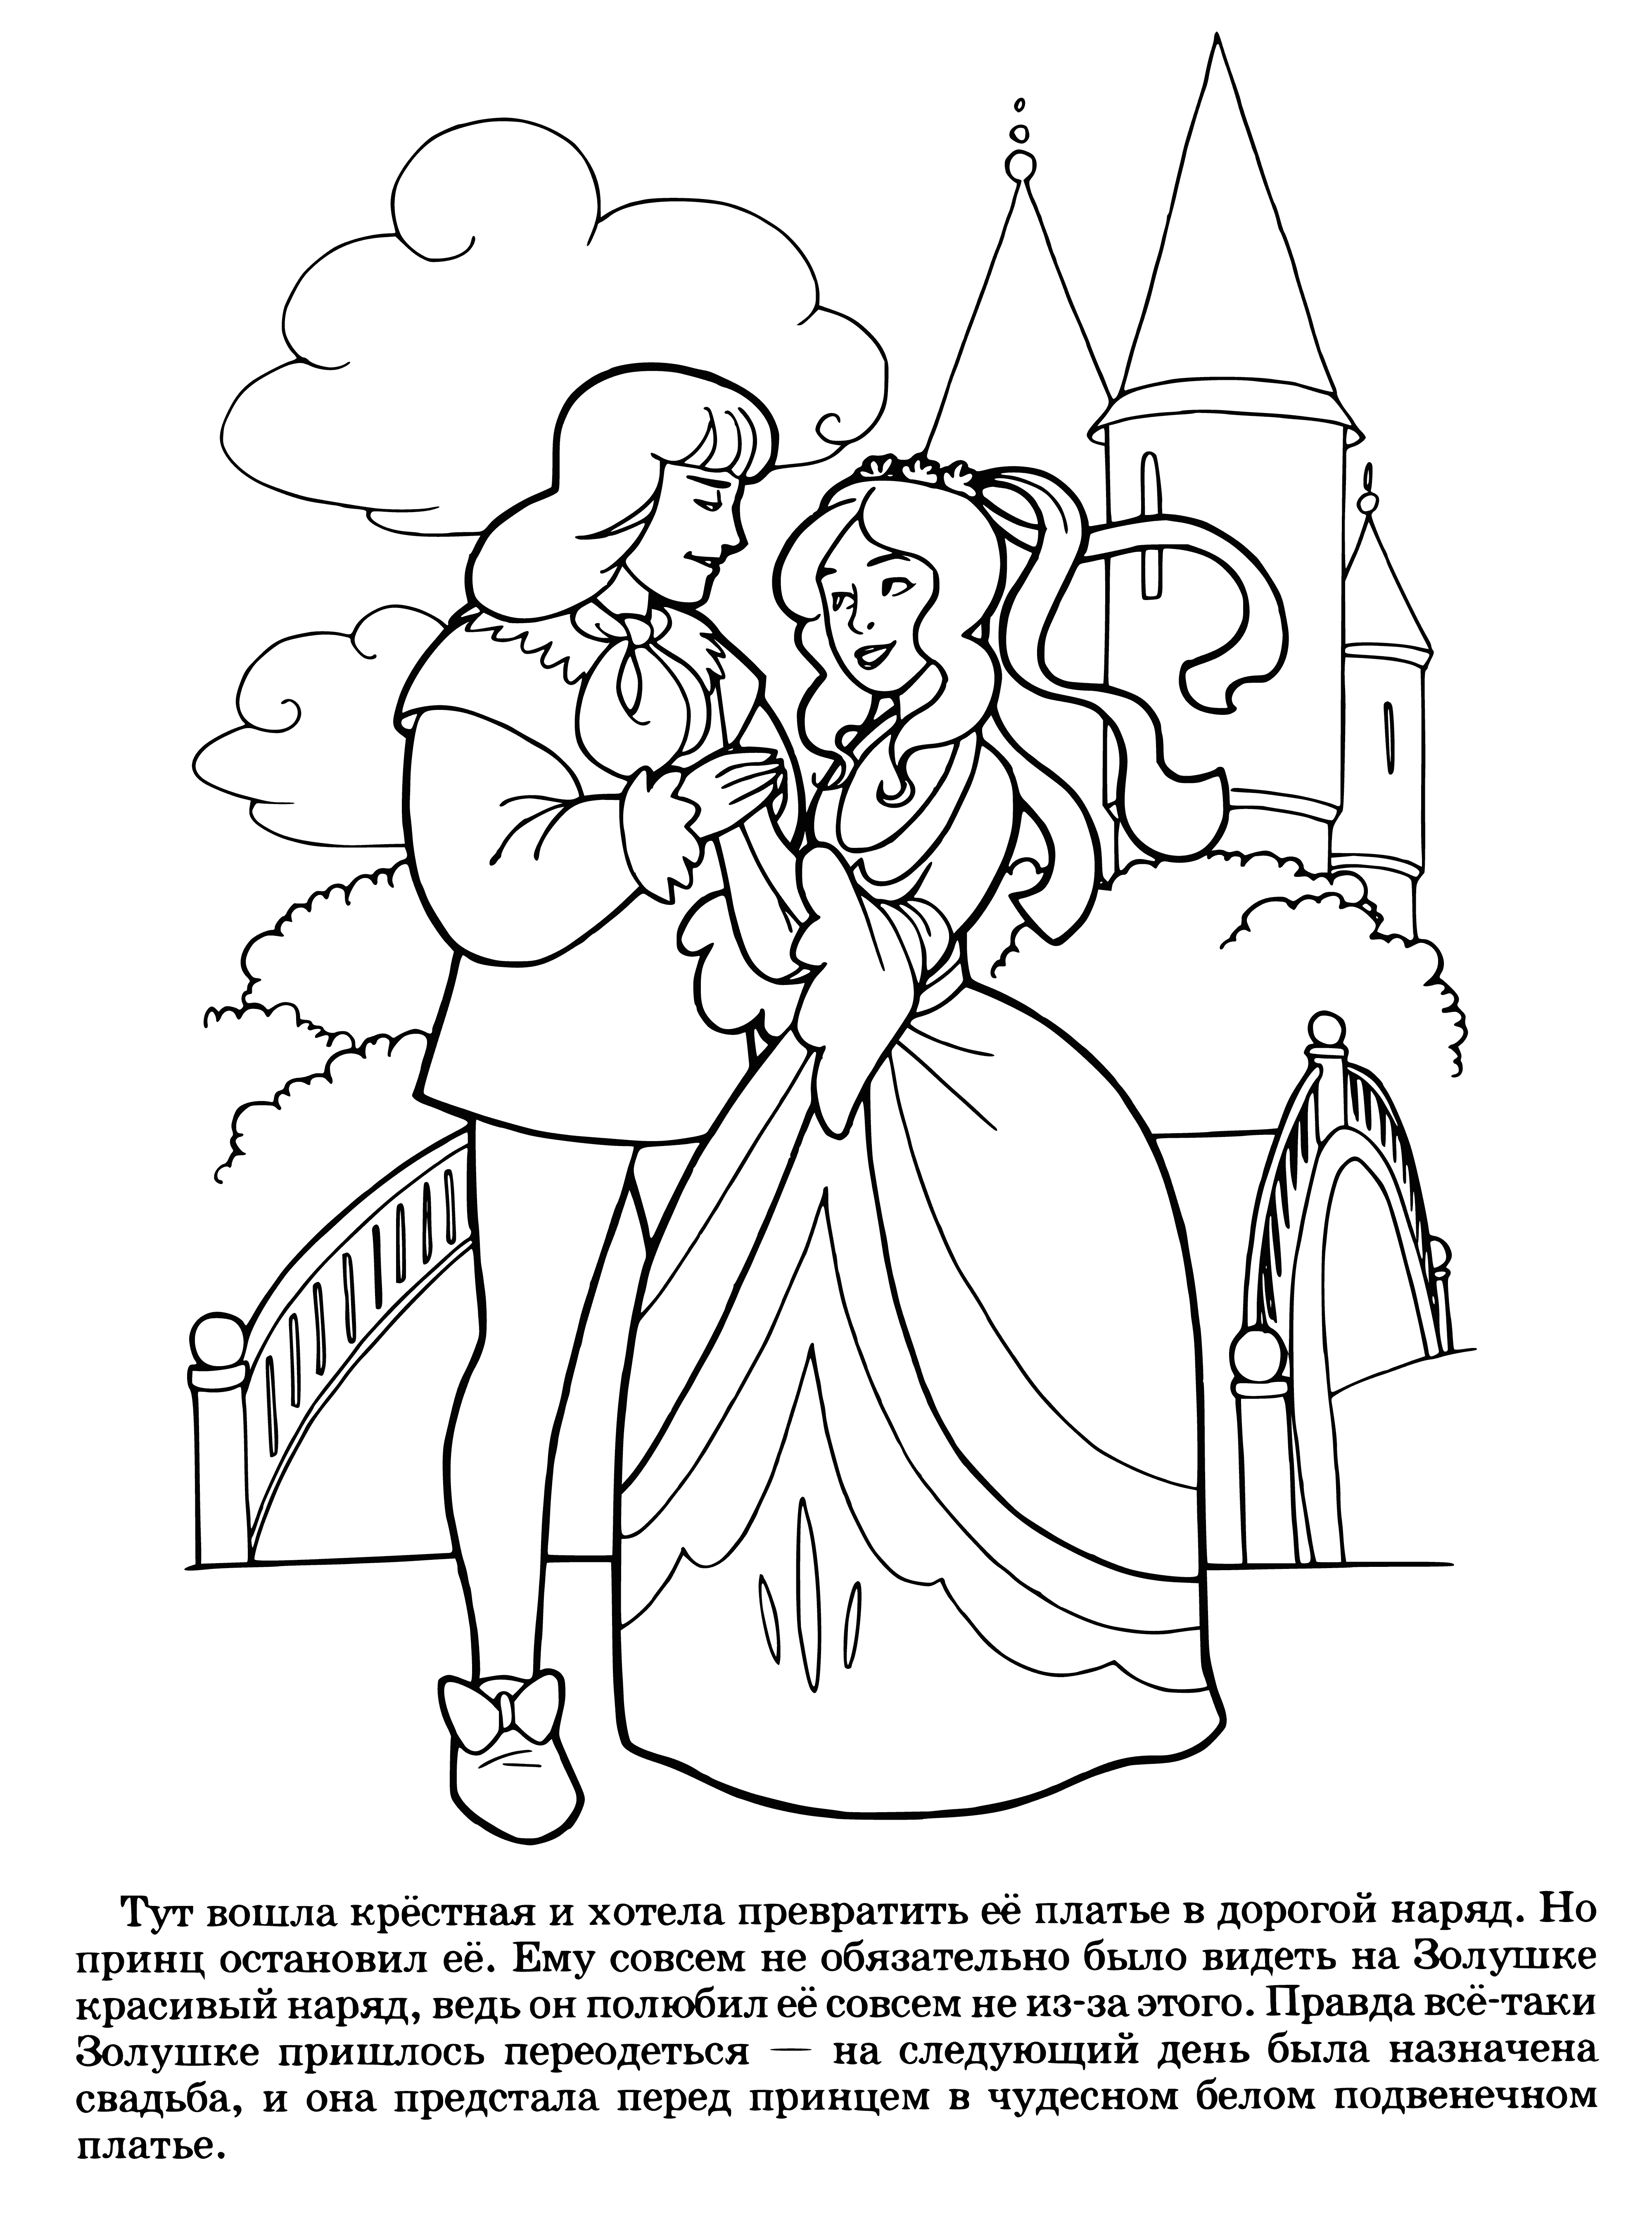 Il matrimonio di Cenerentola pagina da colorare